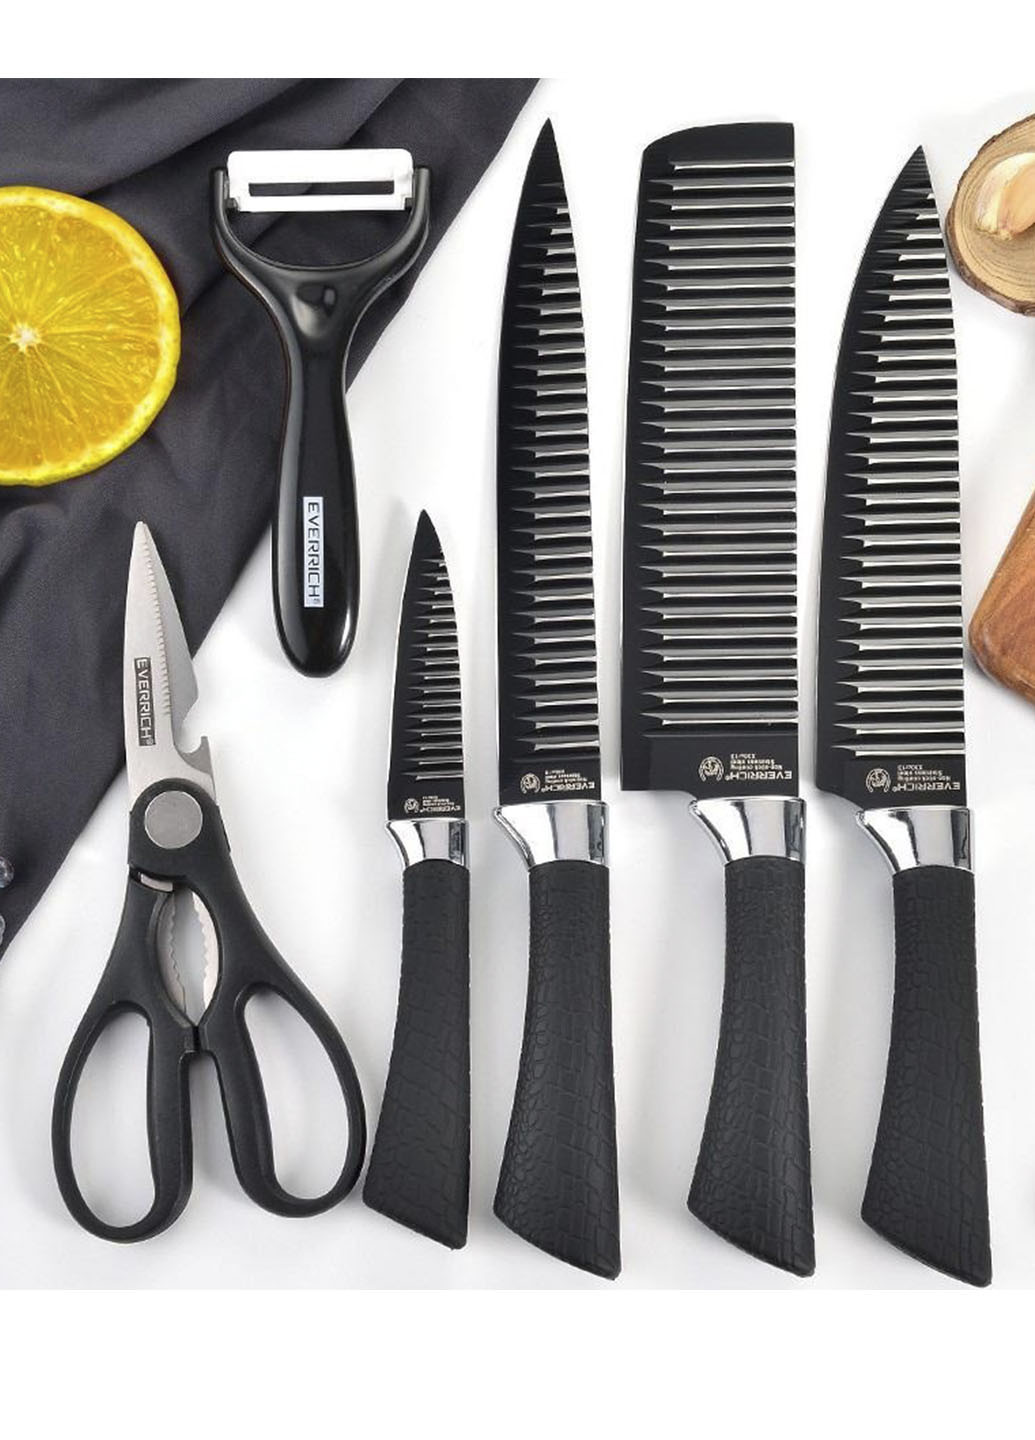 Набор ножей и ножницы Everrich H-004 из нержавеющей стали Good Idea чёрные, металл